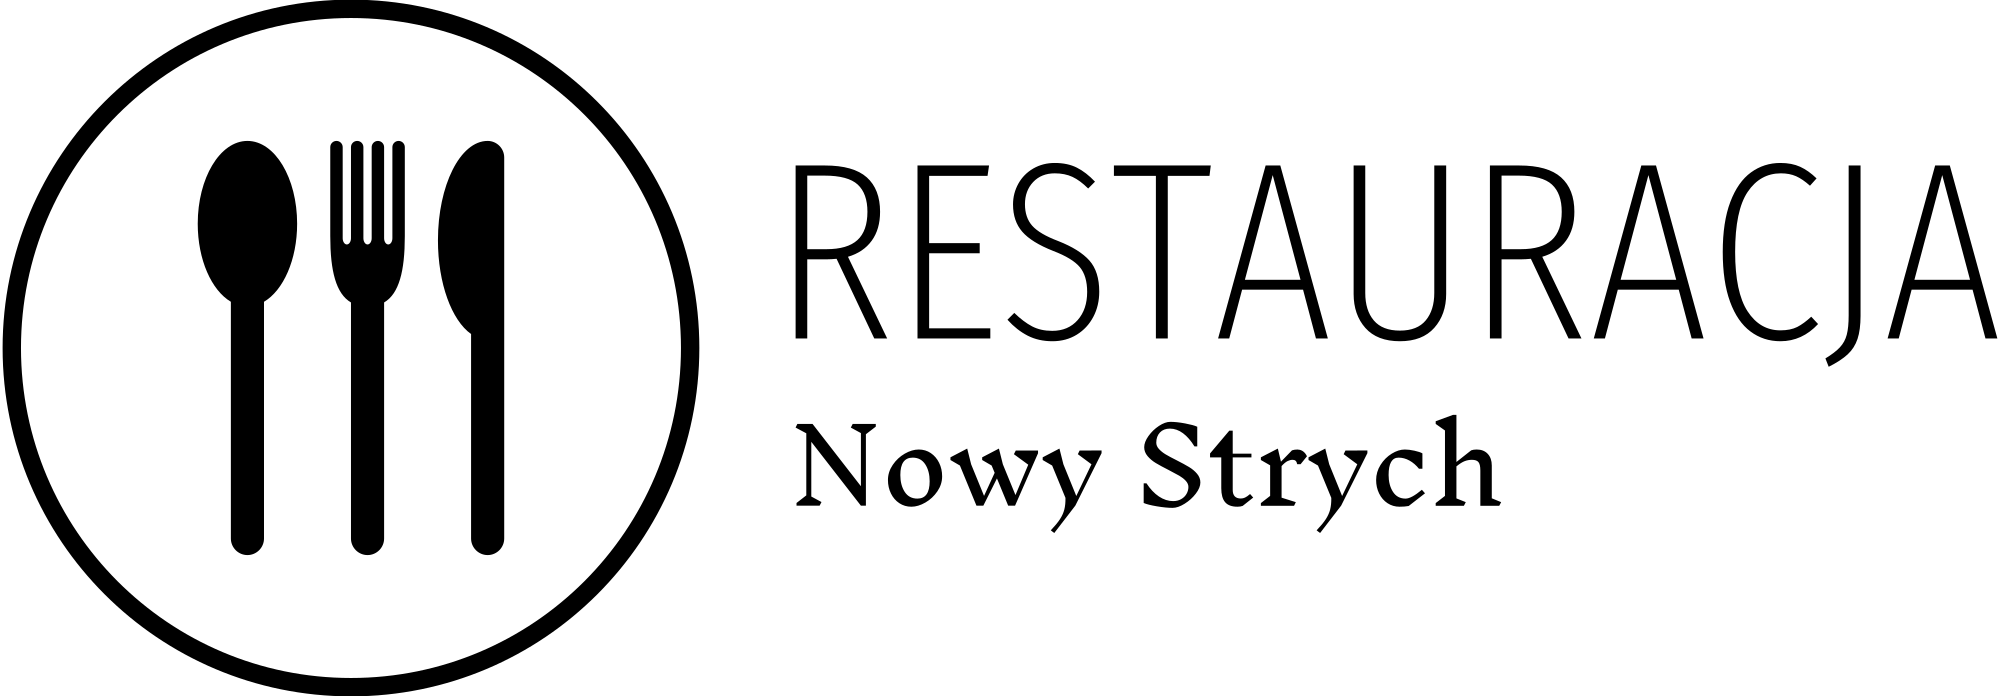 Nowy Strych - restauracja - kuchnia staropolska